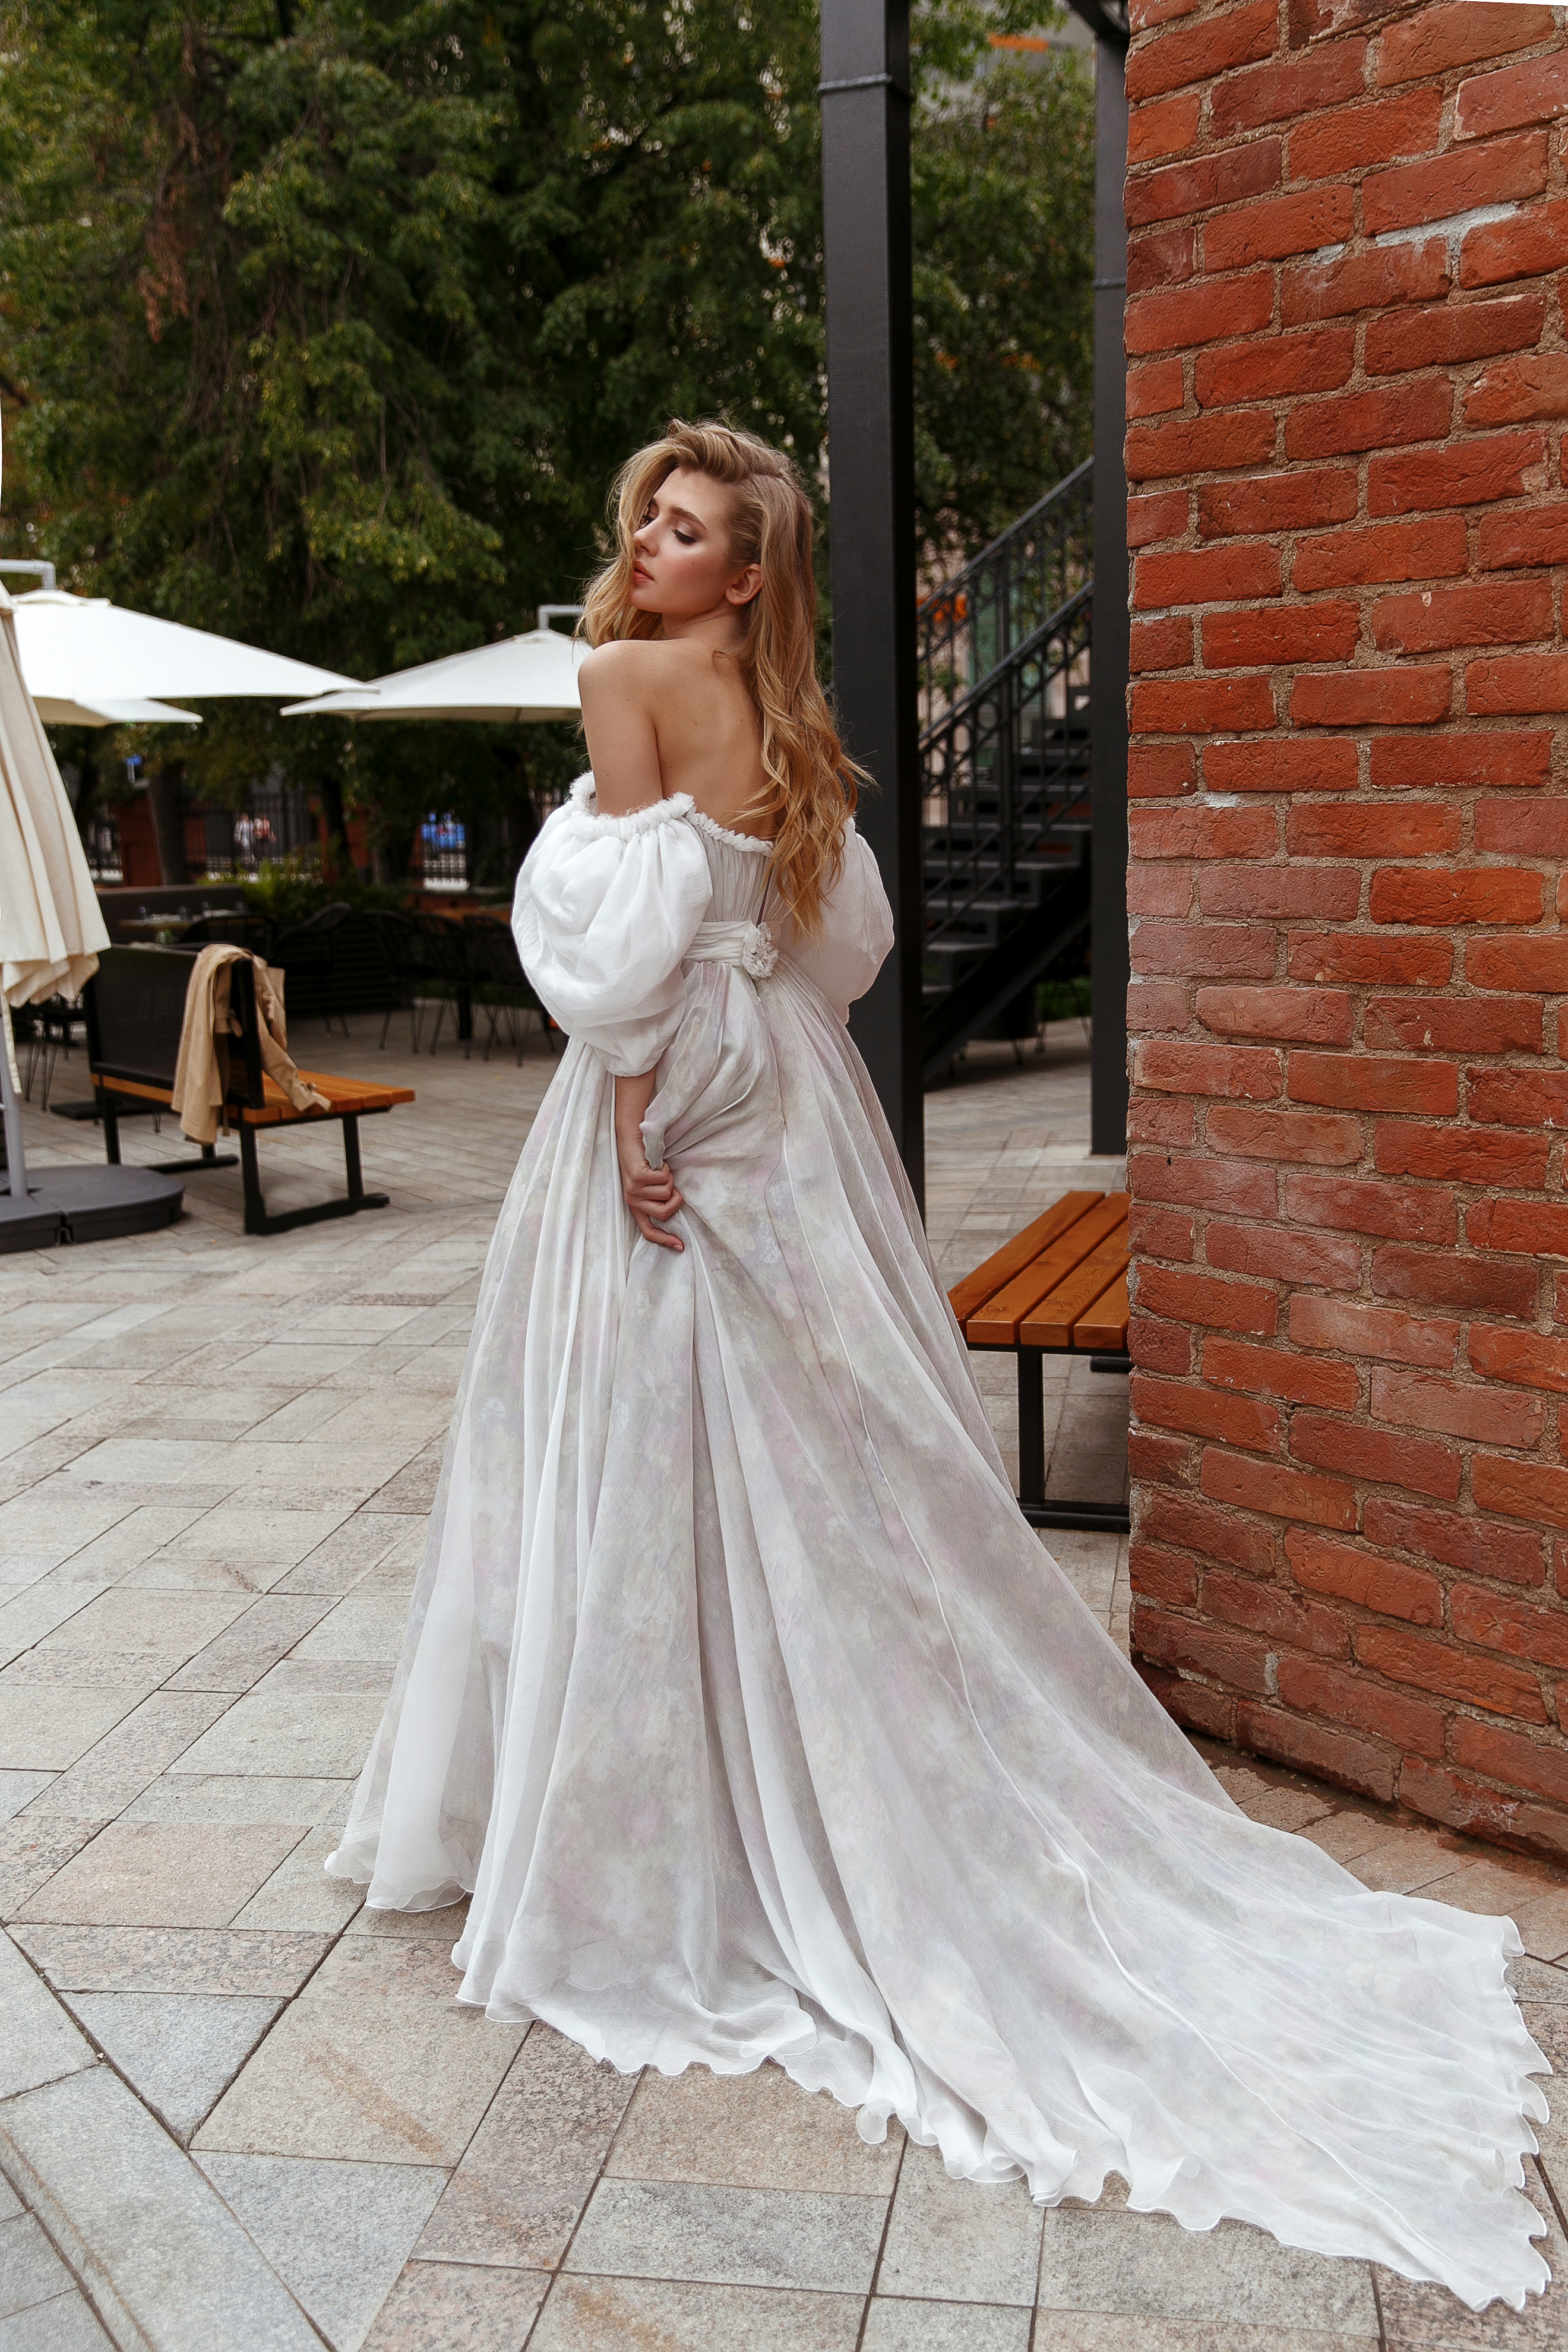 Купить свадебное платье «Хилори» Рара Авис из коллекции Флорал Парадайз 2018 года в салоне свадебных платьев